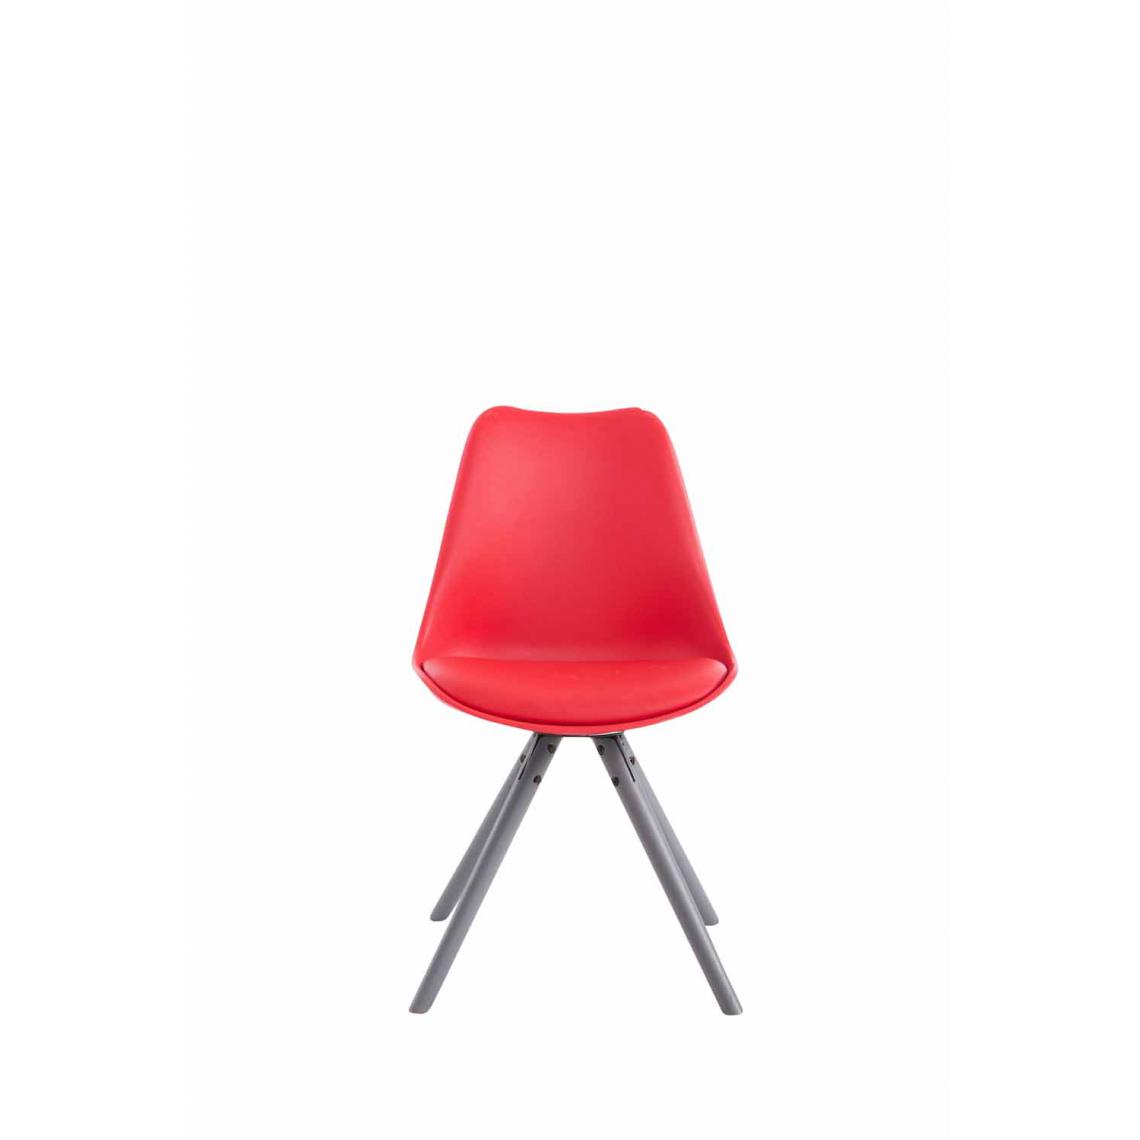 Icaverne - sublime Chaise visiteur categorie Katmandou cuir synthétique rond gris couleur rouge - Chaises